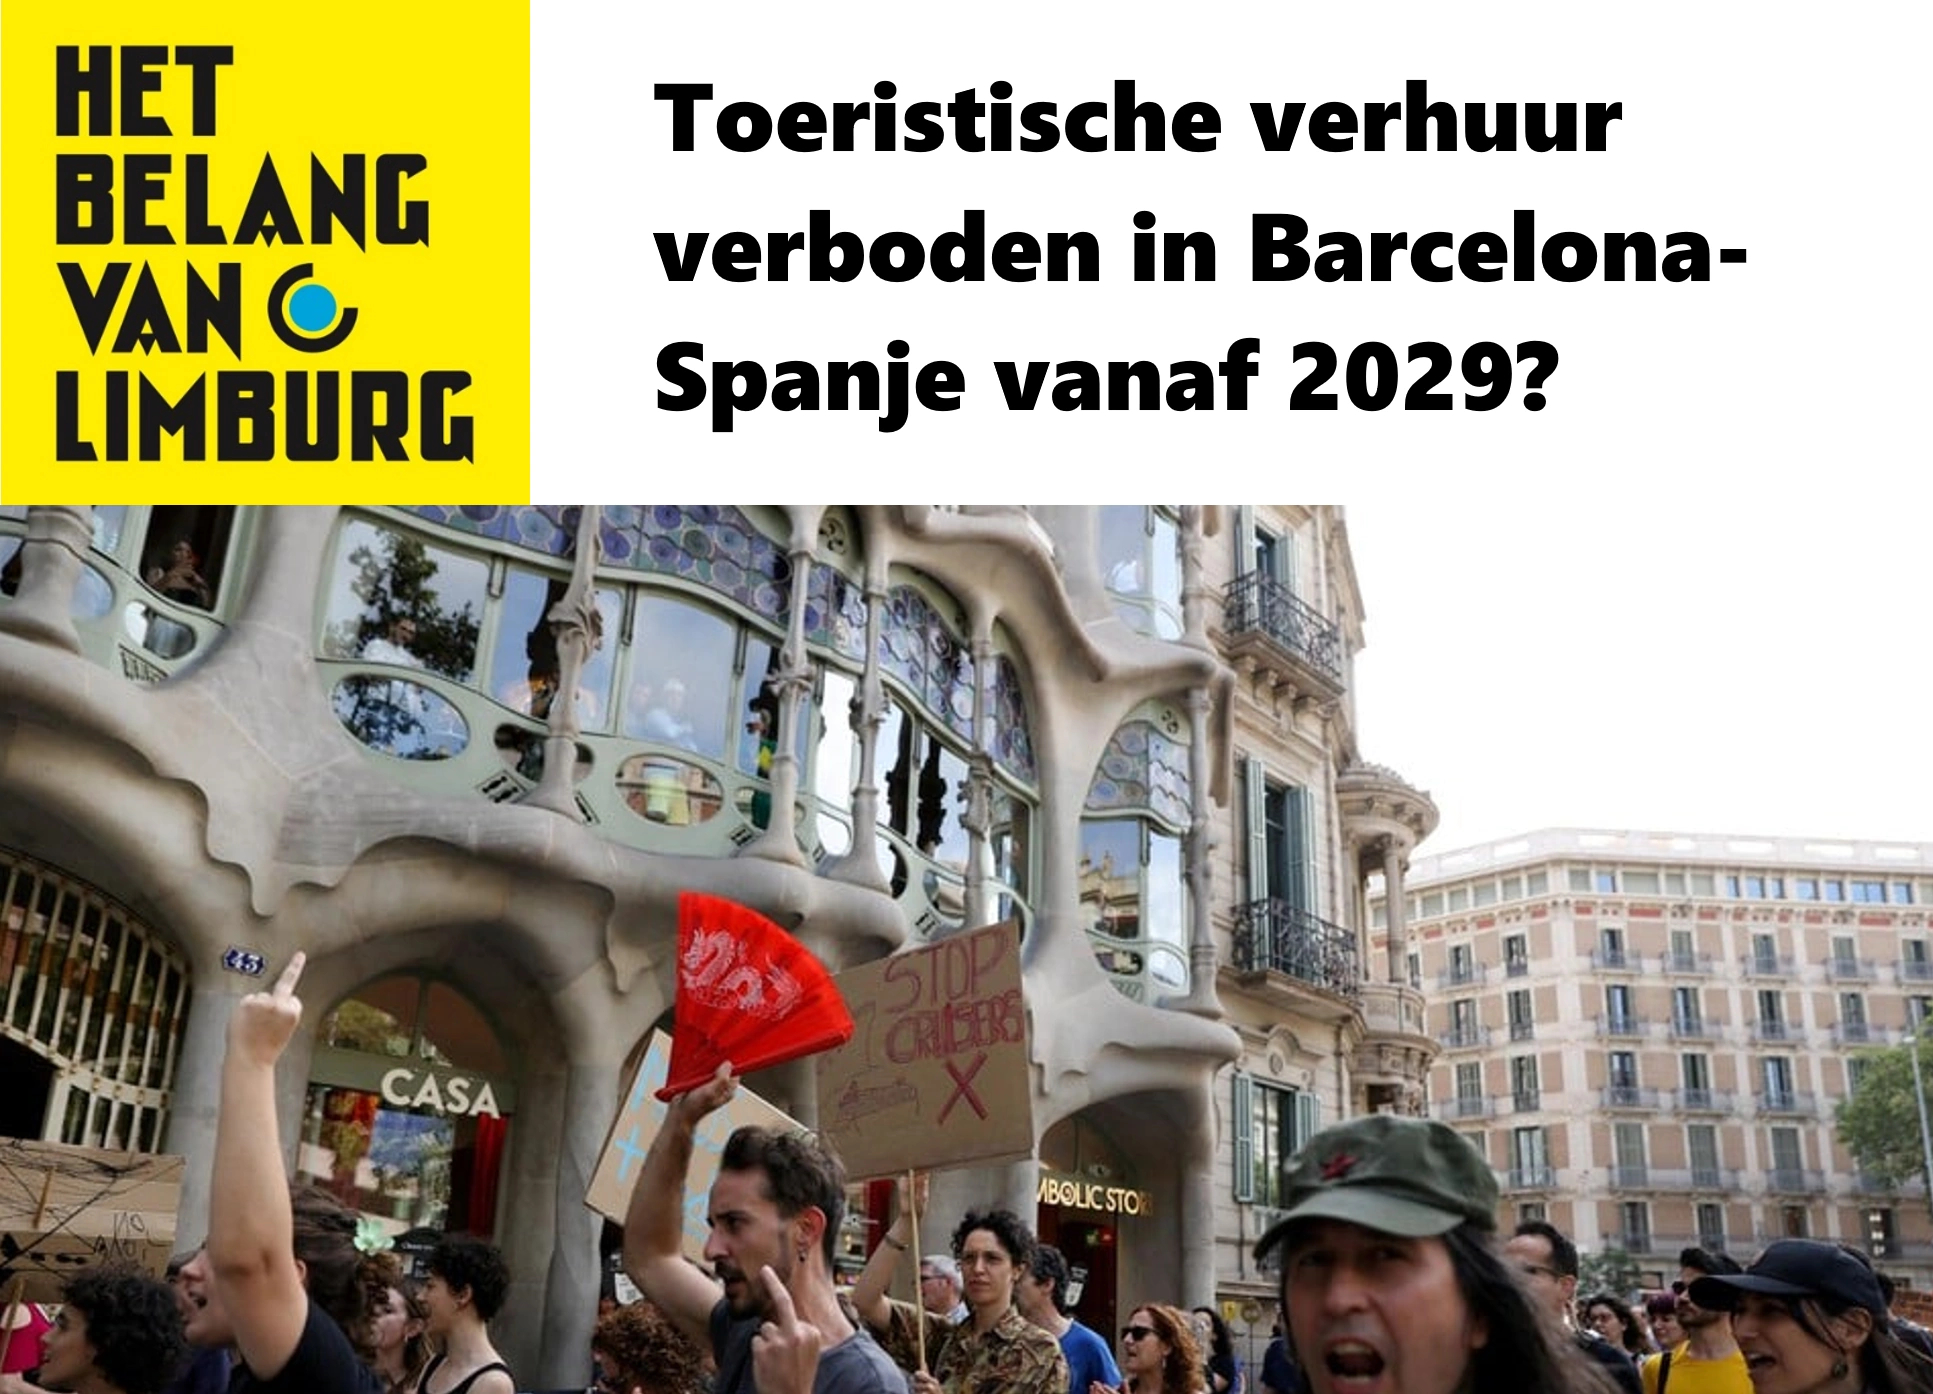 Het Belang van Limburg - 9/7/2024. Toeristische verhuur verboden in Barcelona - Spanje vanaf 2029?